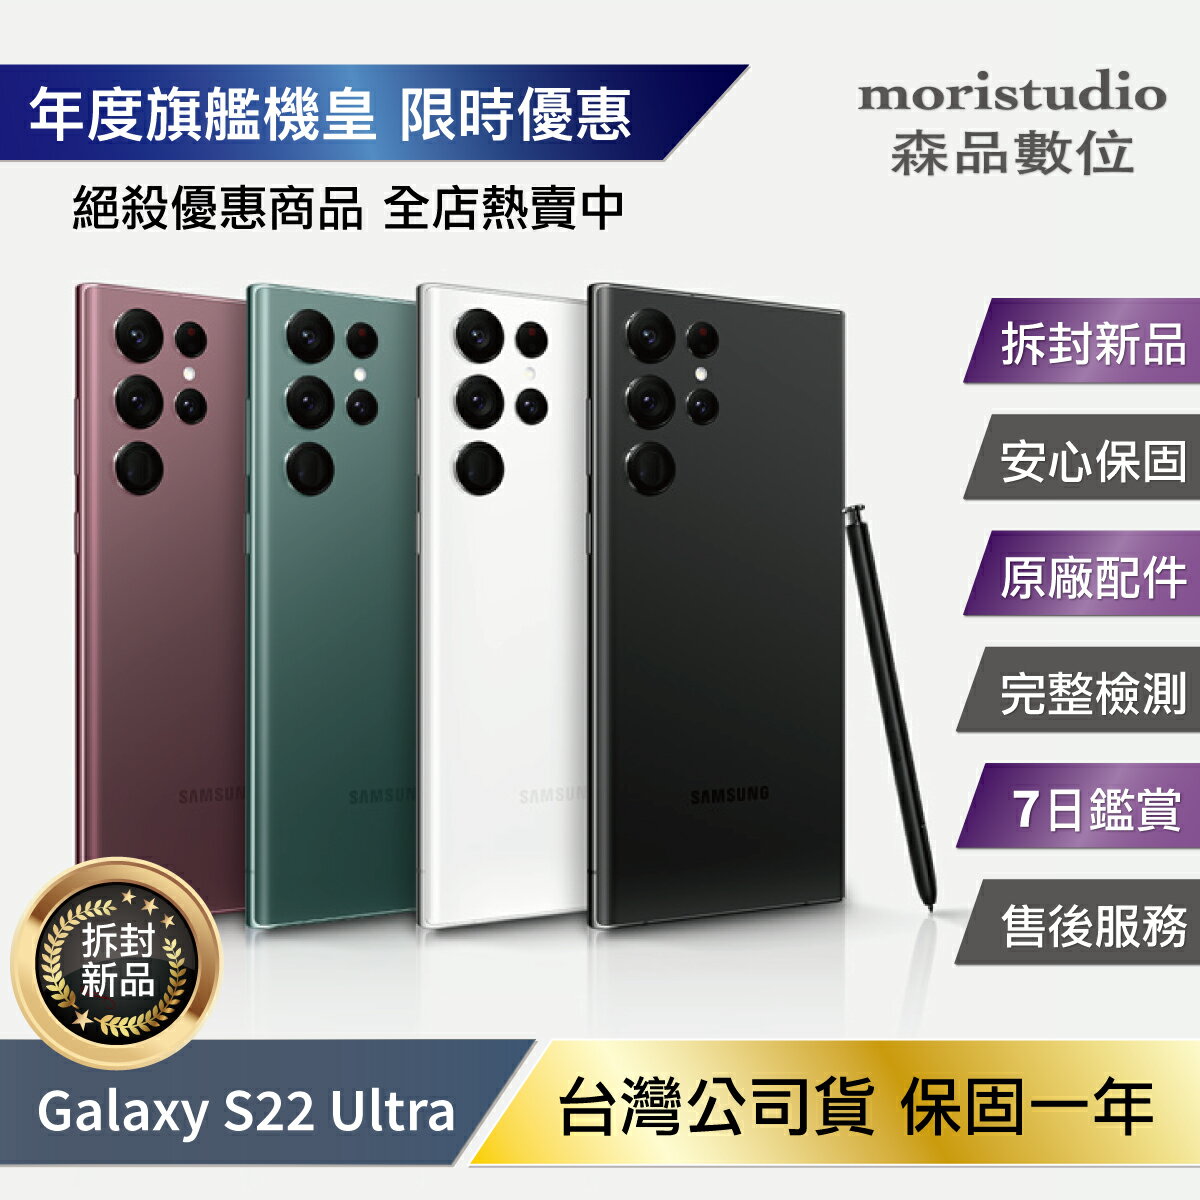 限時優惠贈原廠25W充電頭』SAMSUNG Galaxy S22 Ultra (12G/256G) 拆封